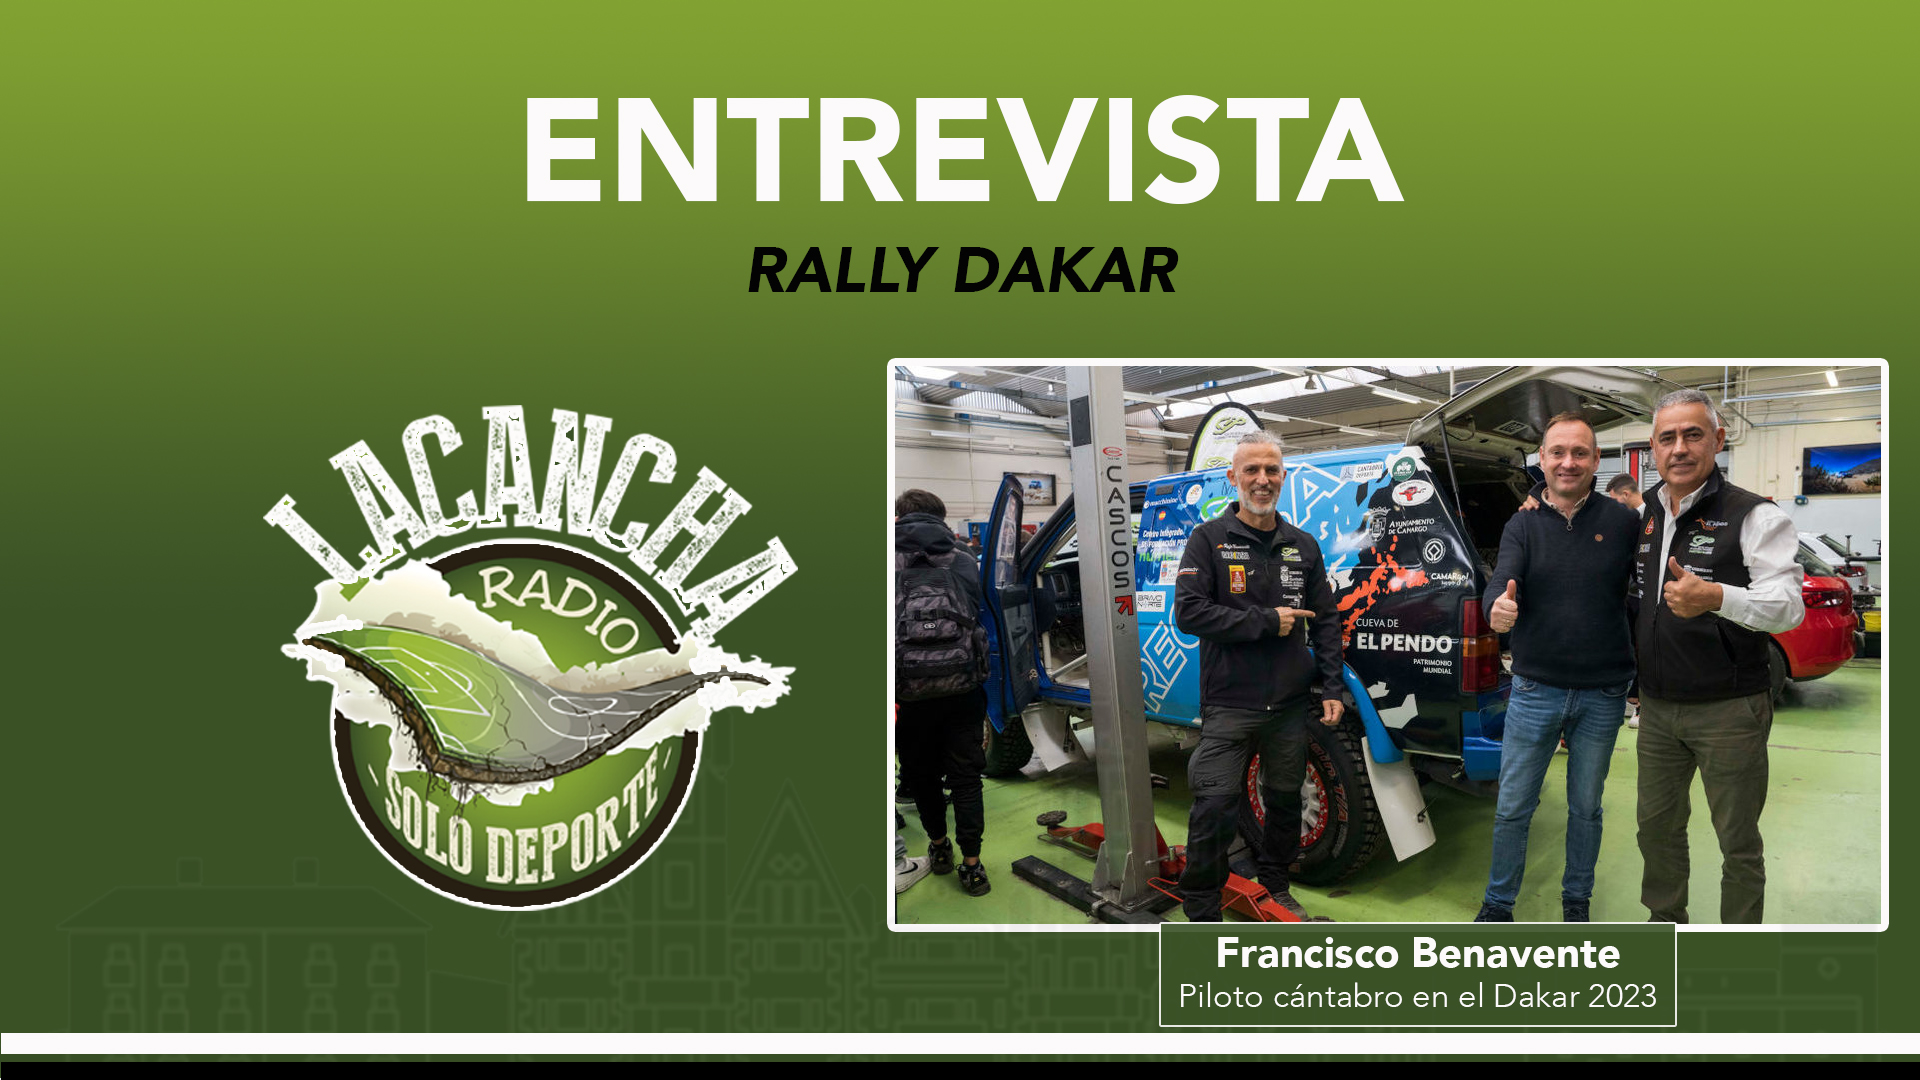 Entrevista con Francisco Benavente, piloto cántabro en el Rally Dakar 2023 (24/11/2022)